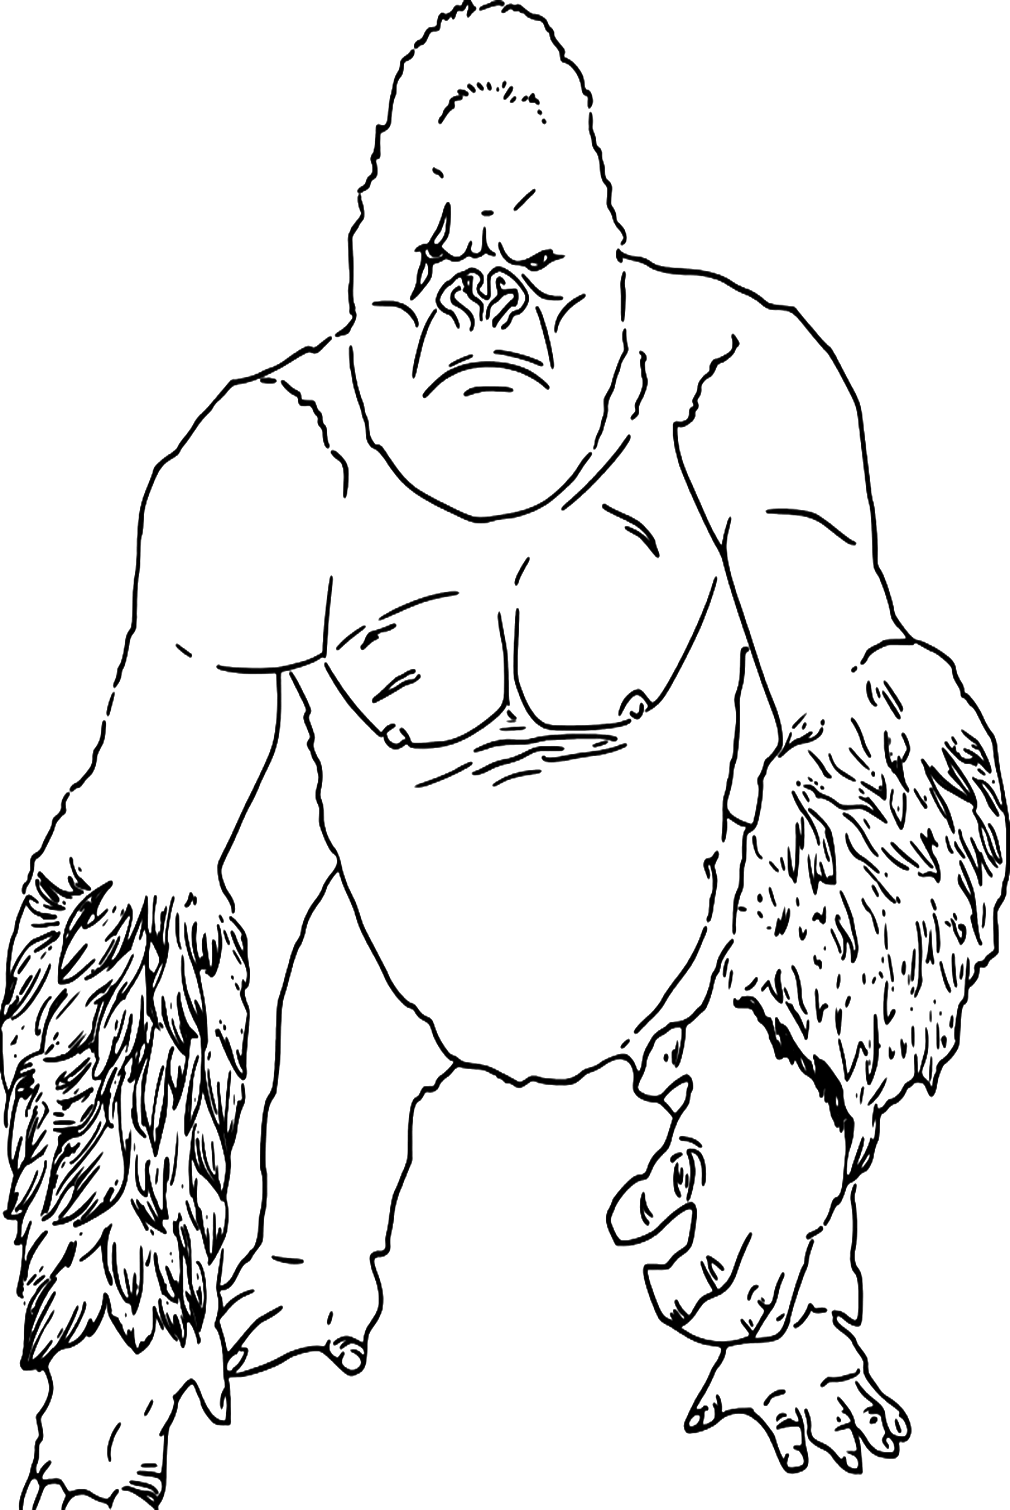 King Kong Menschenaffe aus King Kong